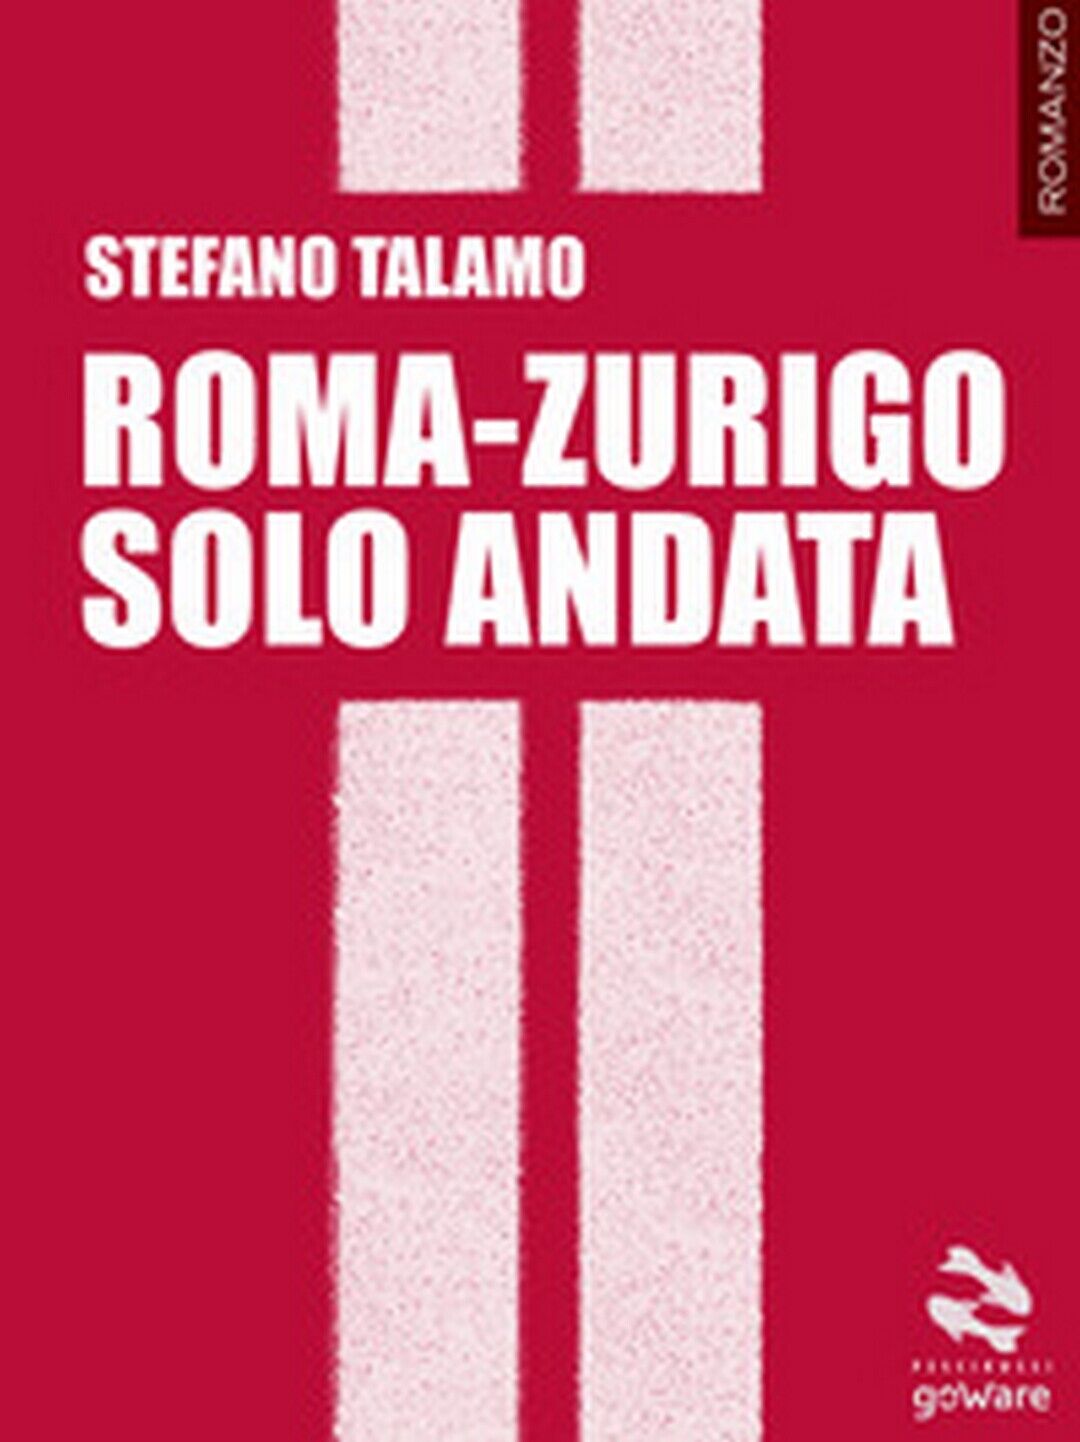 Roma-Zurigo solo andata  di Stefano Talamo,  2017,  Goware